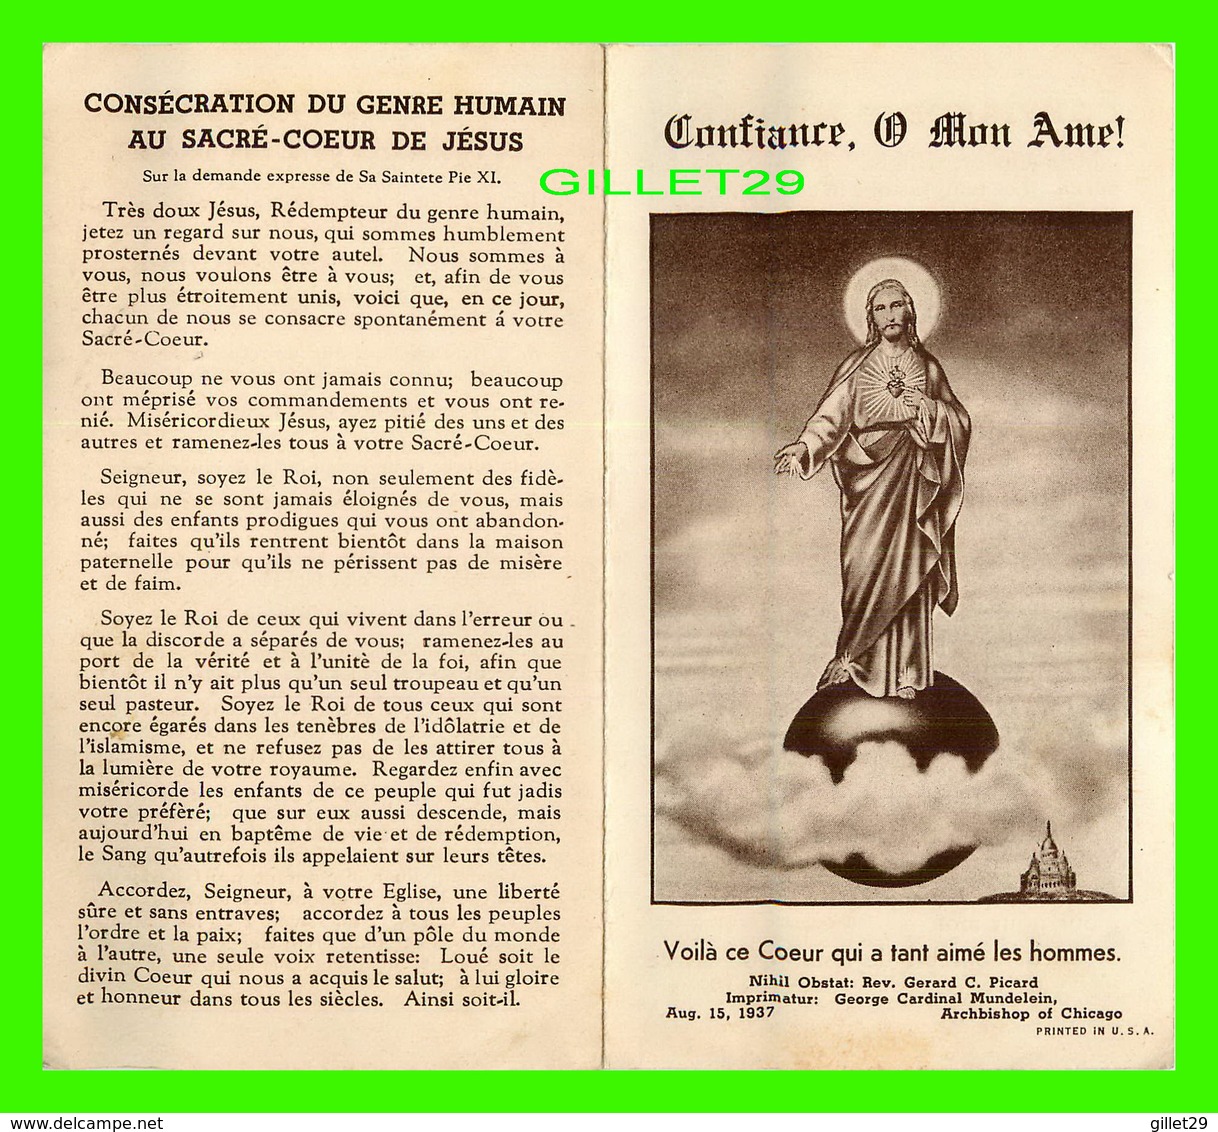 RELIGIONS - CONSÉCRATION DU GENRE HUMAIN AU SACRÉ-CŒUR DE JÉSUS EN 1937 - 4 PAGES - - Jesus